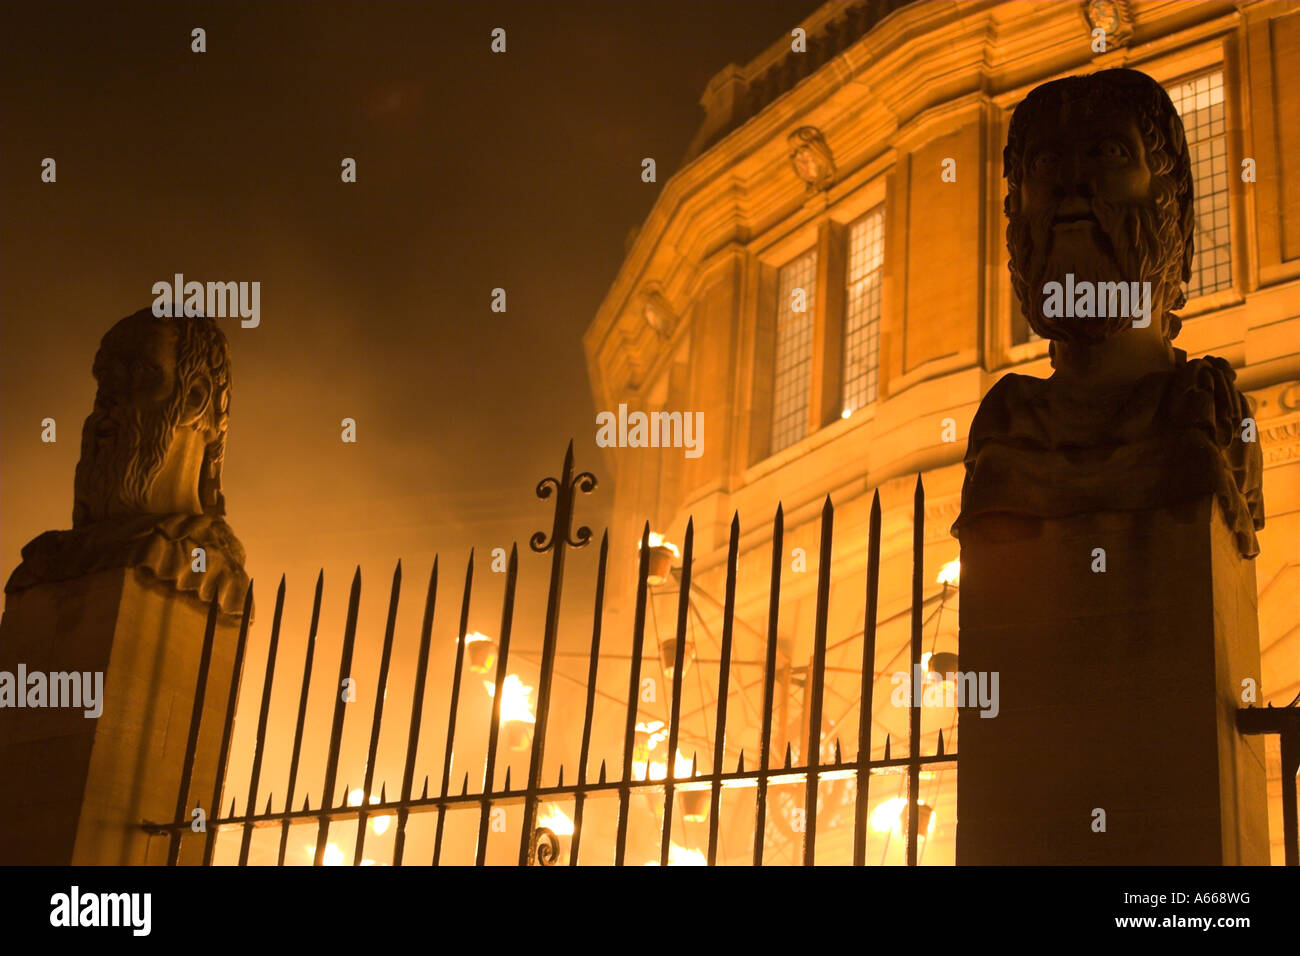 [Sheldonian Theatre] beleuchtet in der Nacht, Eingangstor und Statuen, [Luminox Feuerfestival], "Broad Street", Oxford, England, UK Stockfoto